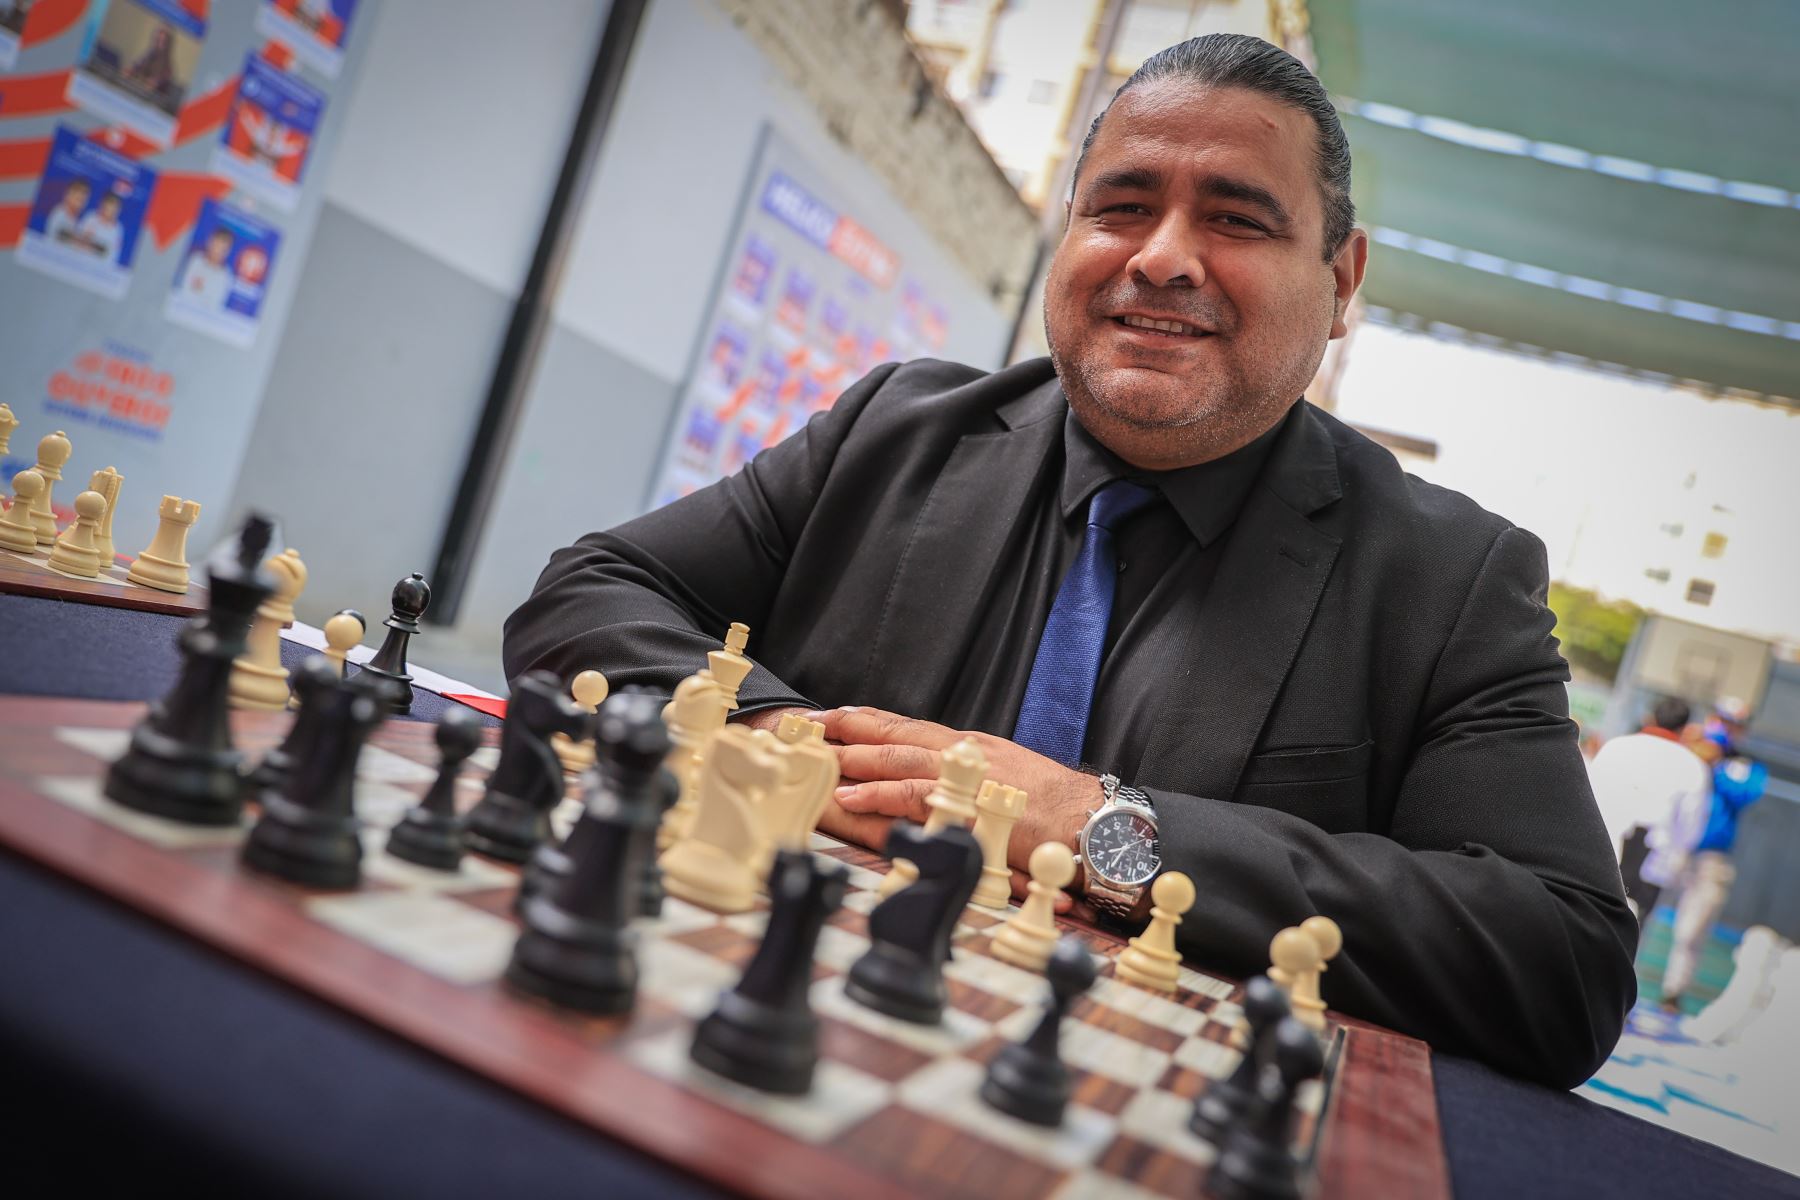 El equipo peruano se coronó campeón mundial escolar de ajedrez en Panamá, tras superar a cerca de 600 ajedrecistas de 36 países. Dante Soto entrenador de la selección de ajedrez. 
Foto: ANDINA/Andrés Valle